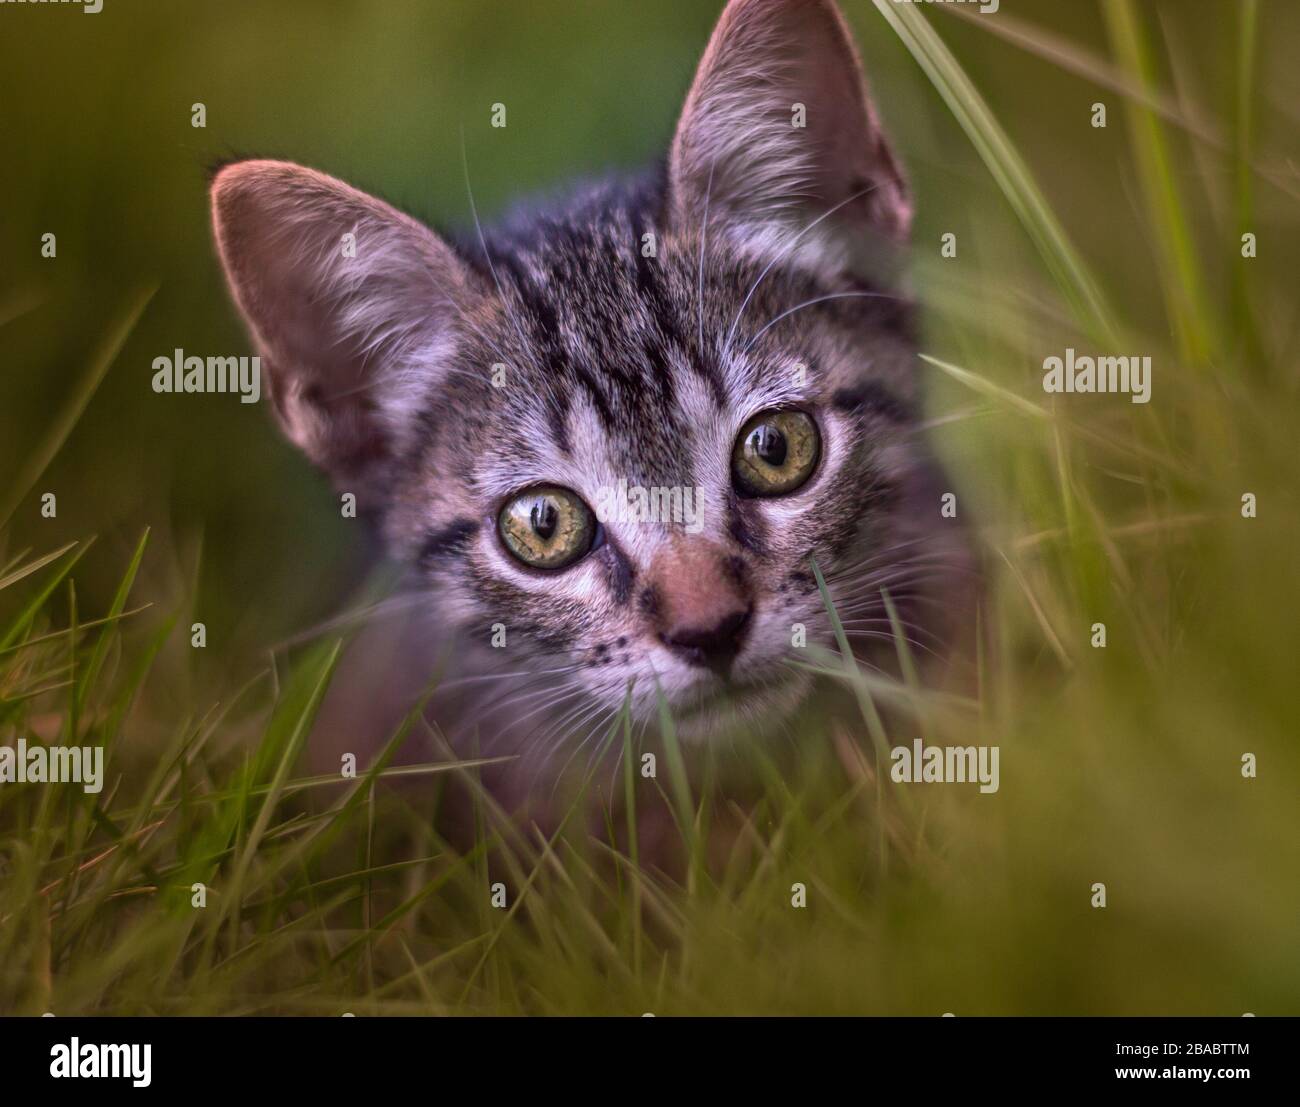 Ritratto creativo di un simpatico gatto Tabby in erba Foto Stock